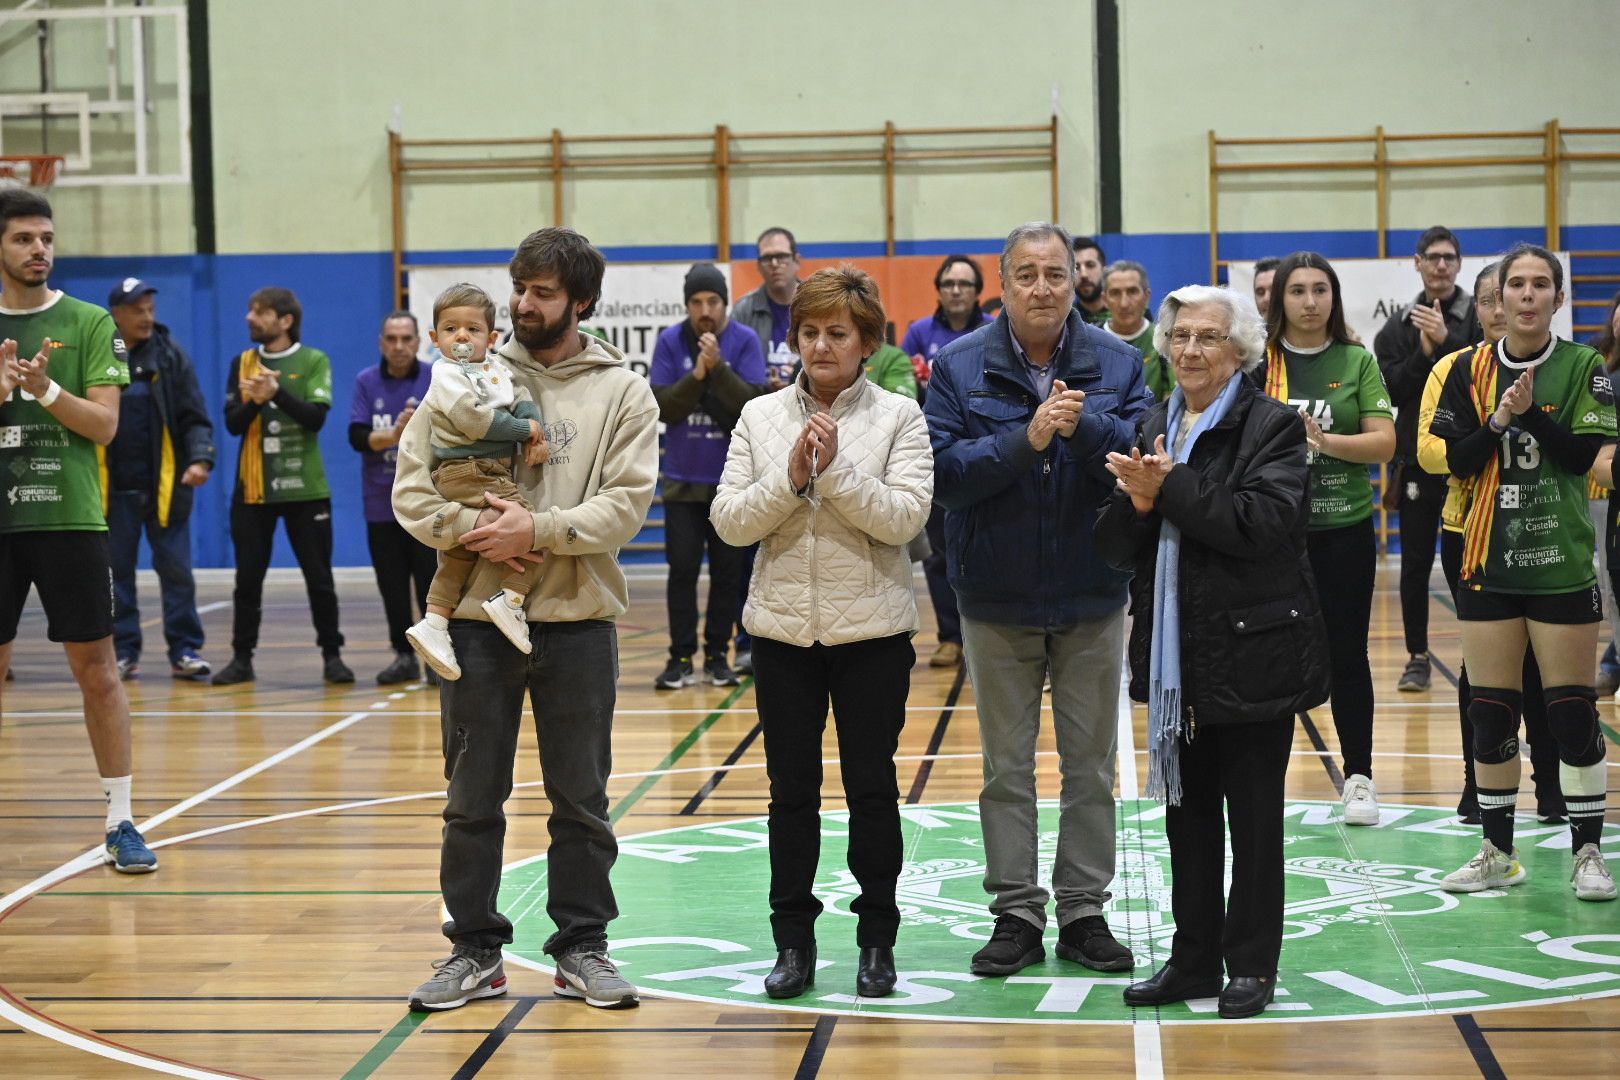 Merecido homenaje en Castelló: El mundo del balonmano rinde tributo a Rafael Martí